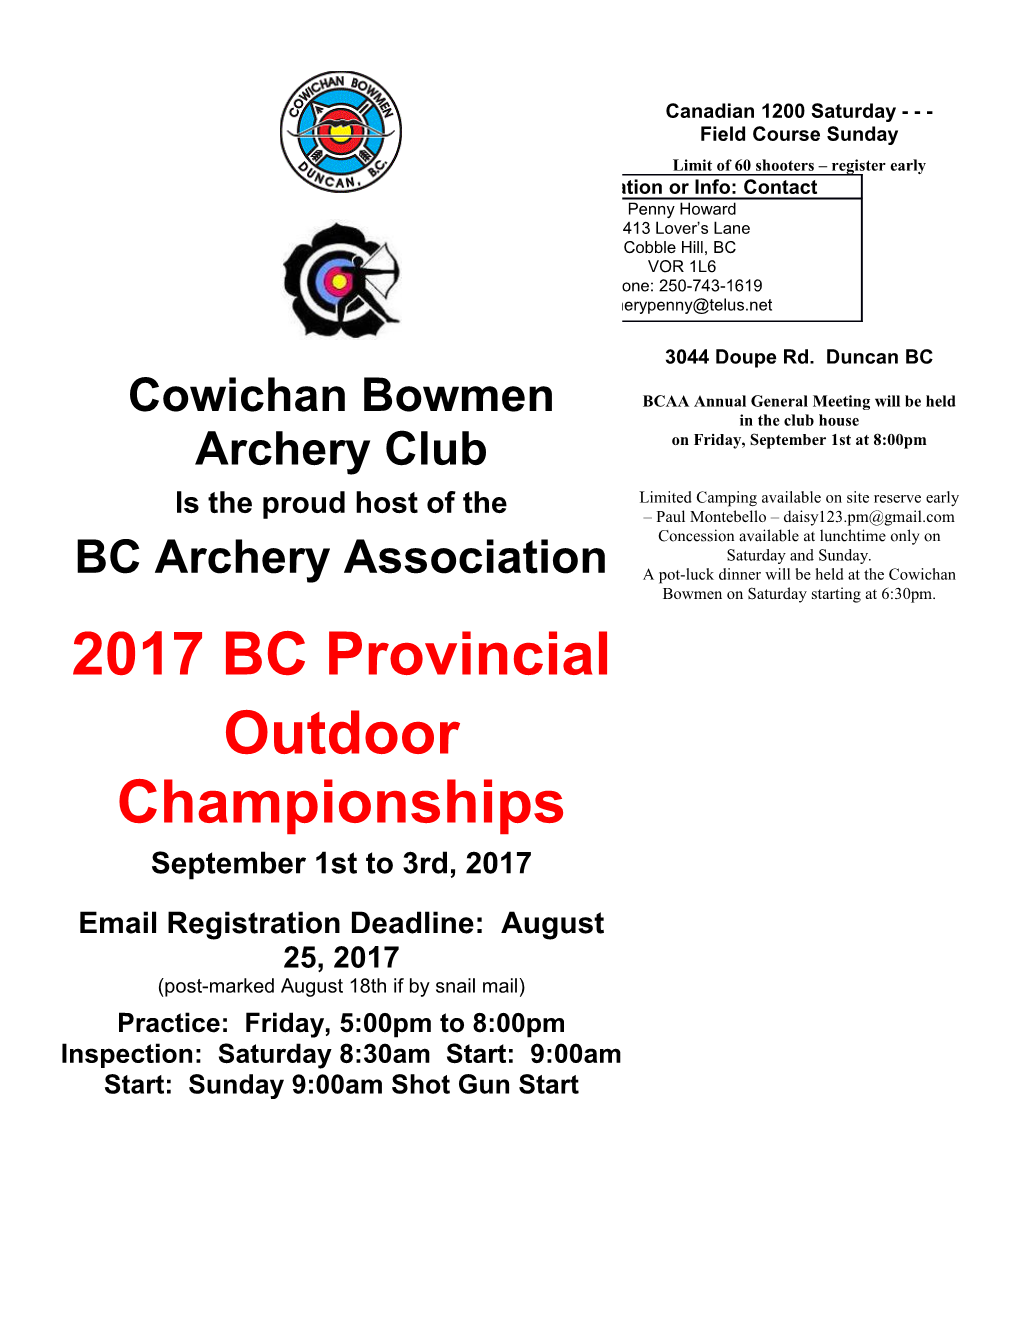 Cowichan Bowmen Archery Club